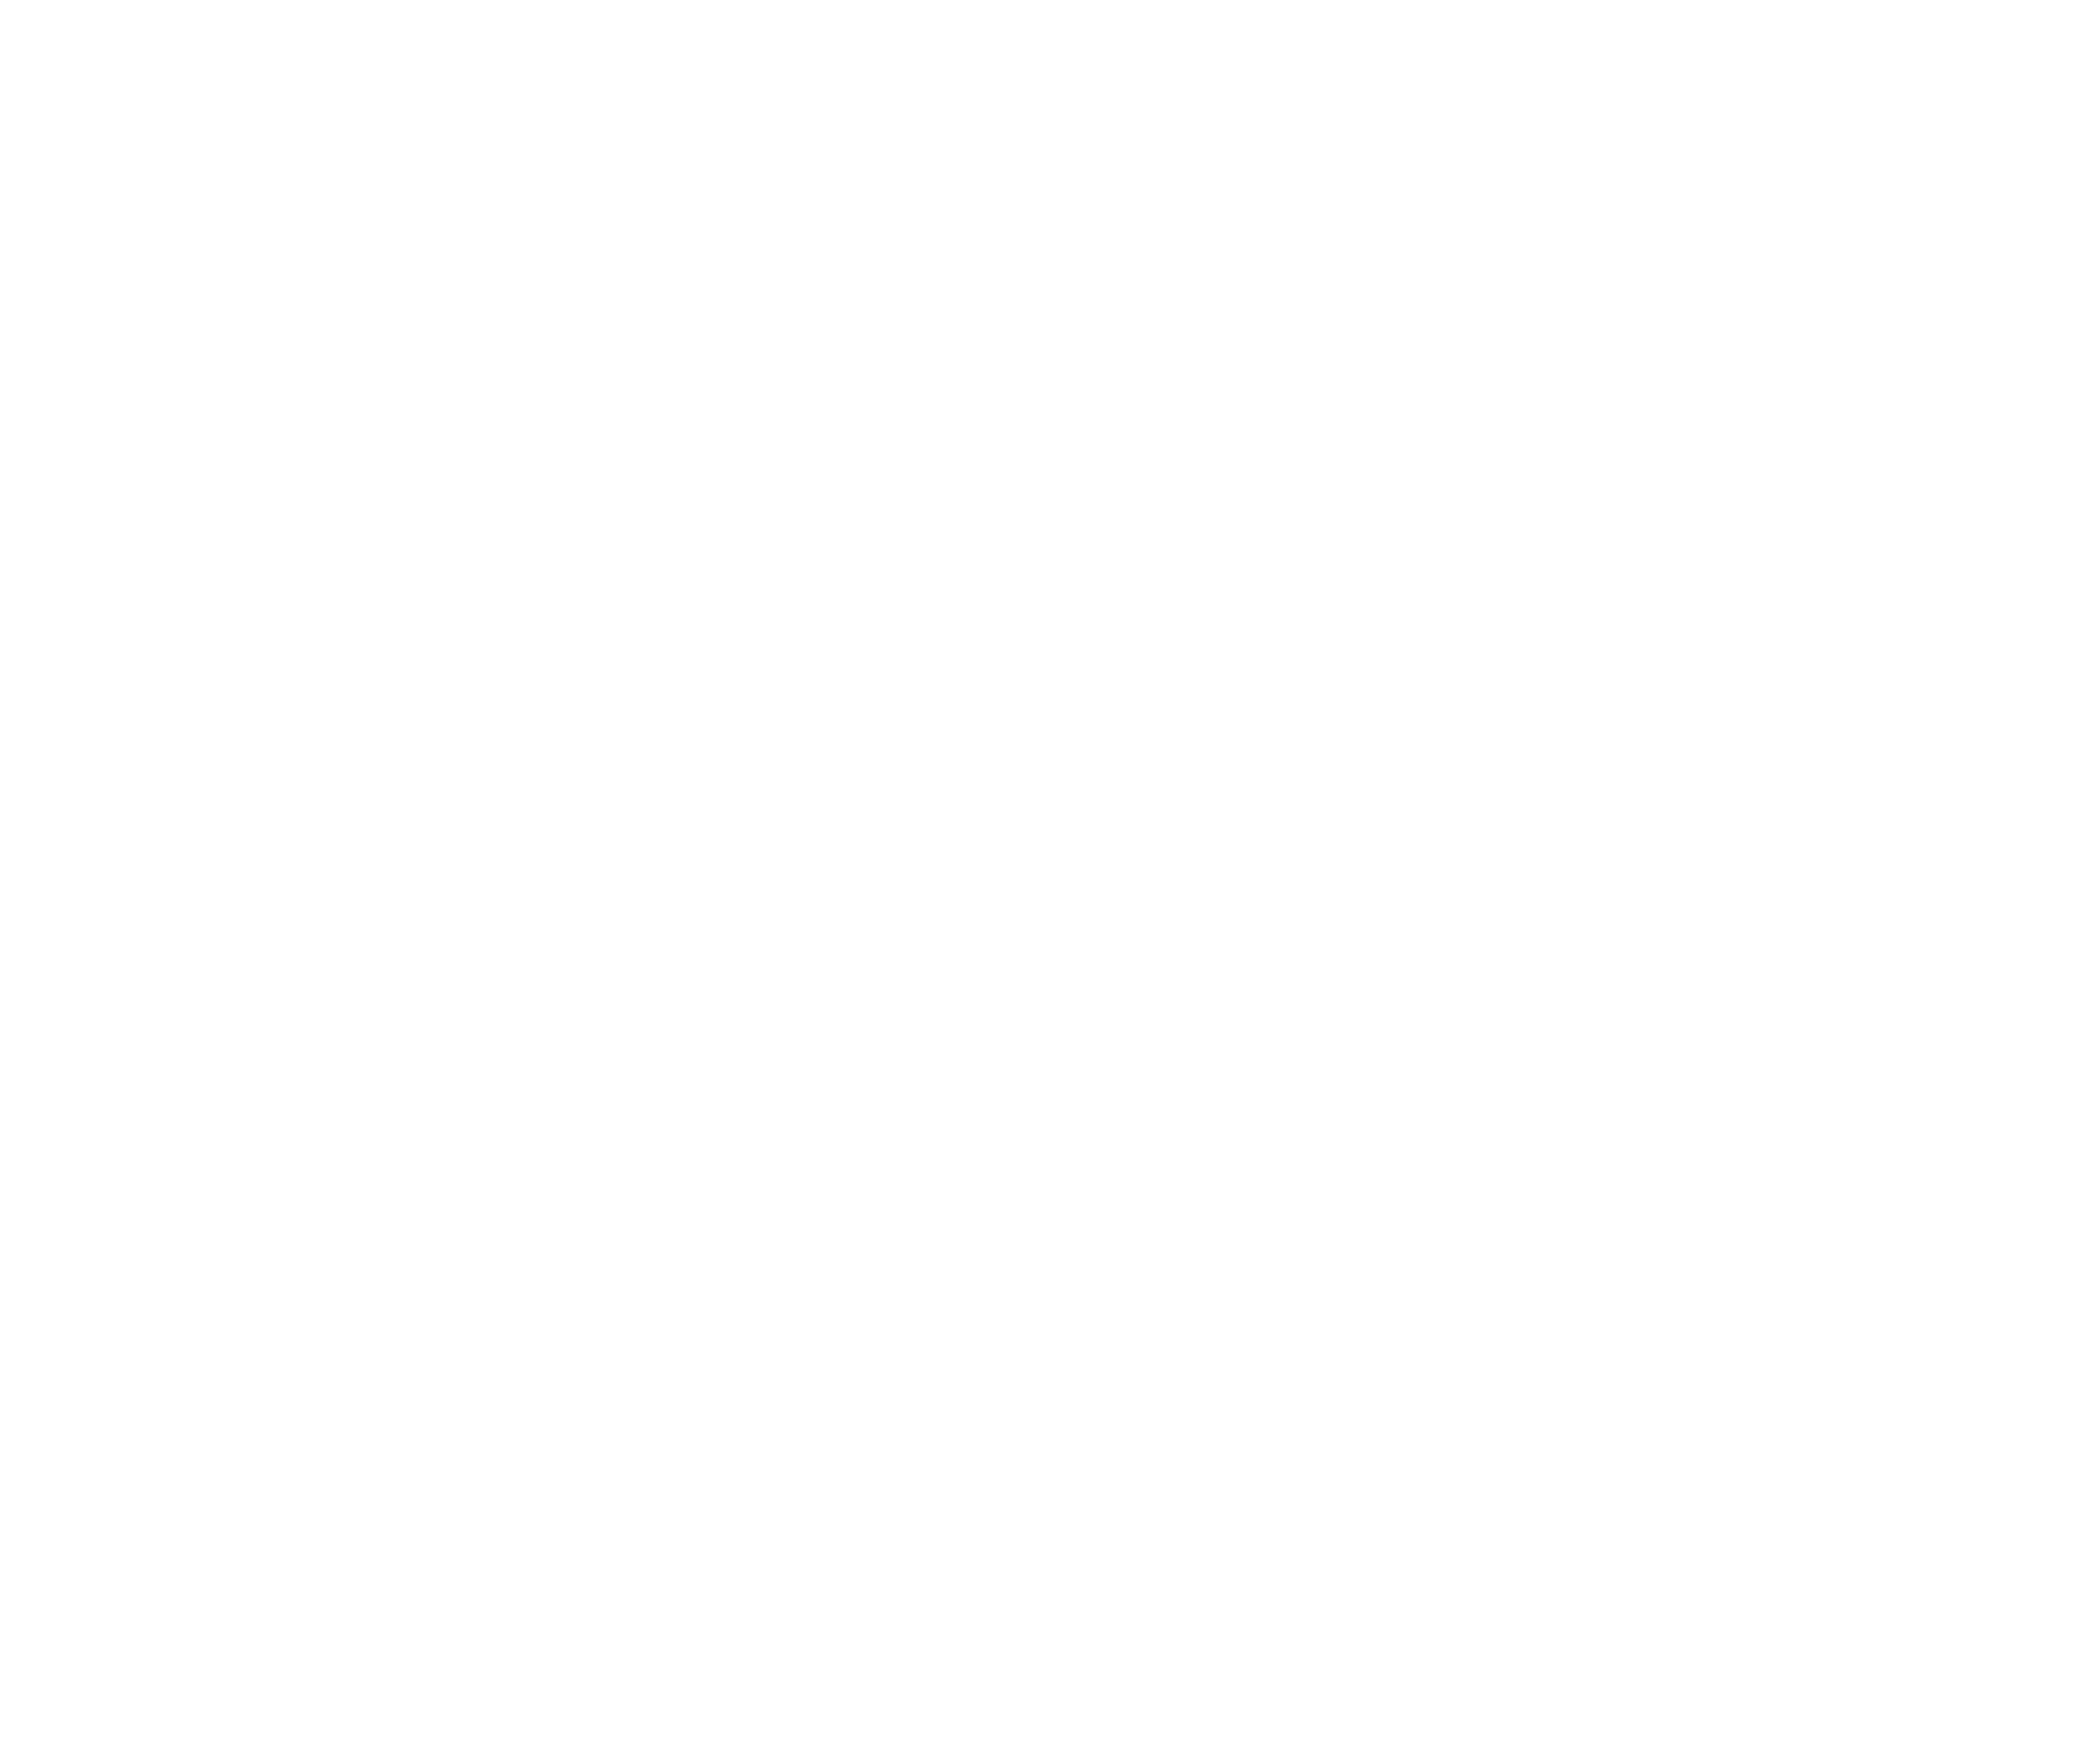 Das Bild zeigt den Schriftzug Struck & Tetzner GbR als Logo.